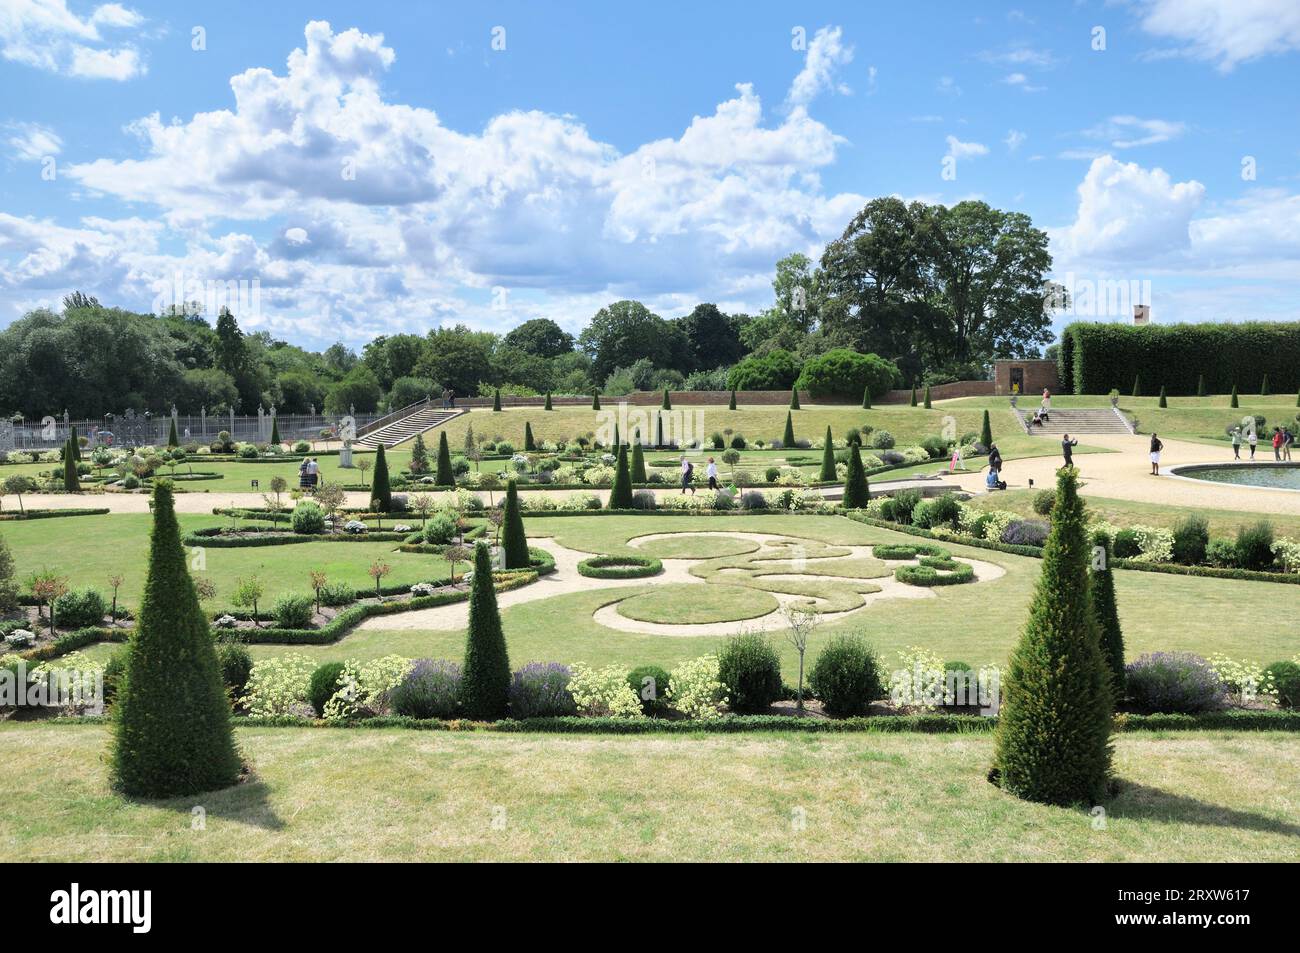 The Privy Garden at Hampton Court Palace mit Kiespfaden, gazon Coupé Grasskulptur und abgeschnittenem Topiary. Formeller englischer Barock-Garten. Stockfoto